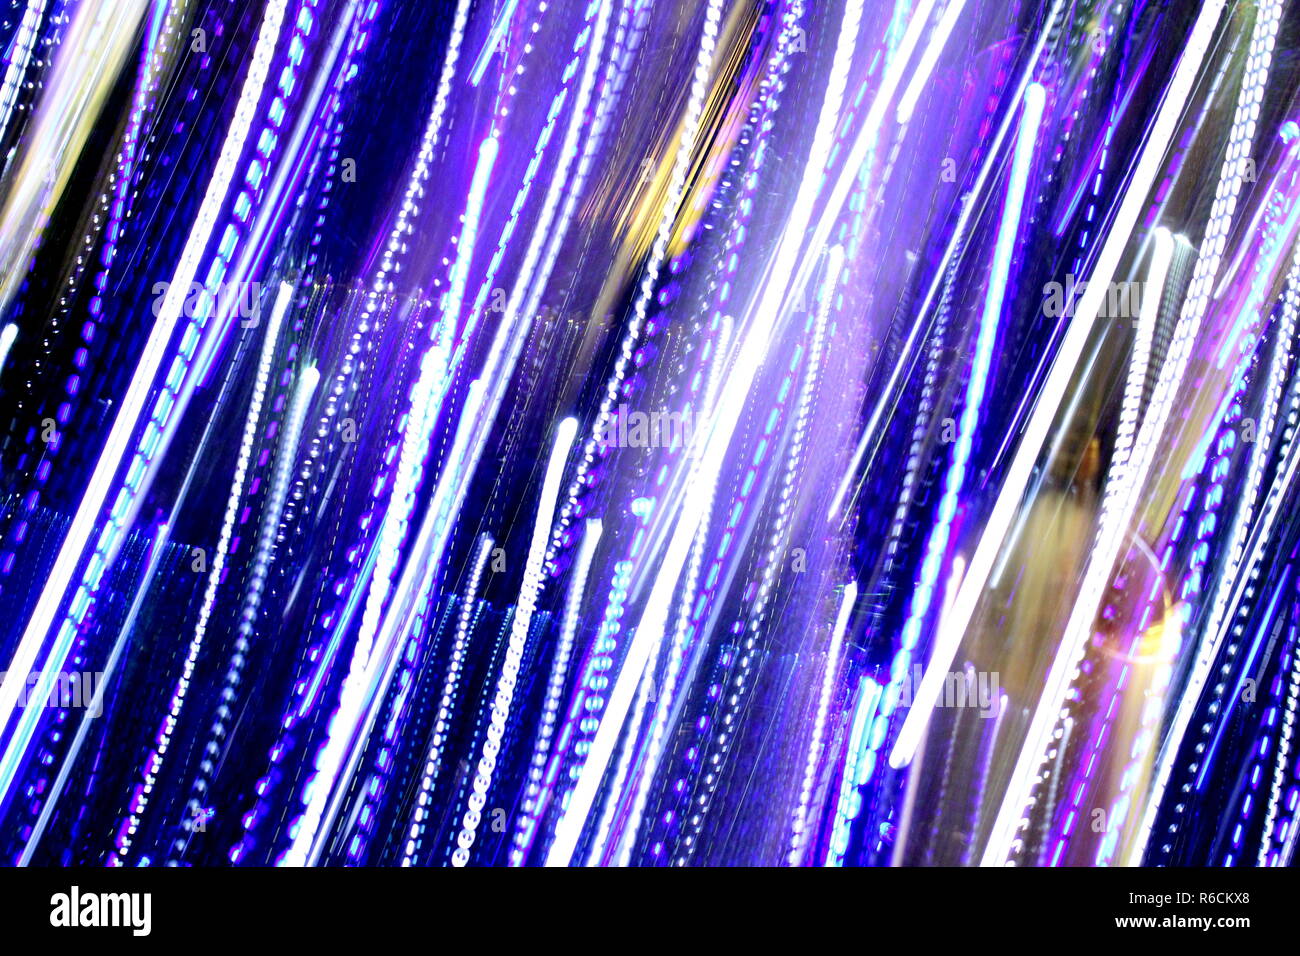 Abstrakte unscharfen Hintergrund, bunte Lichter, Geschwindigkeit und Bewegung mit mehreren Farben farbige Lichter, Gemischt blau, lila, gold und grün verschwommen Lichter Stockfoto